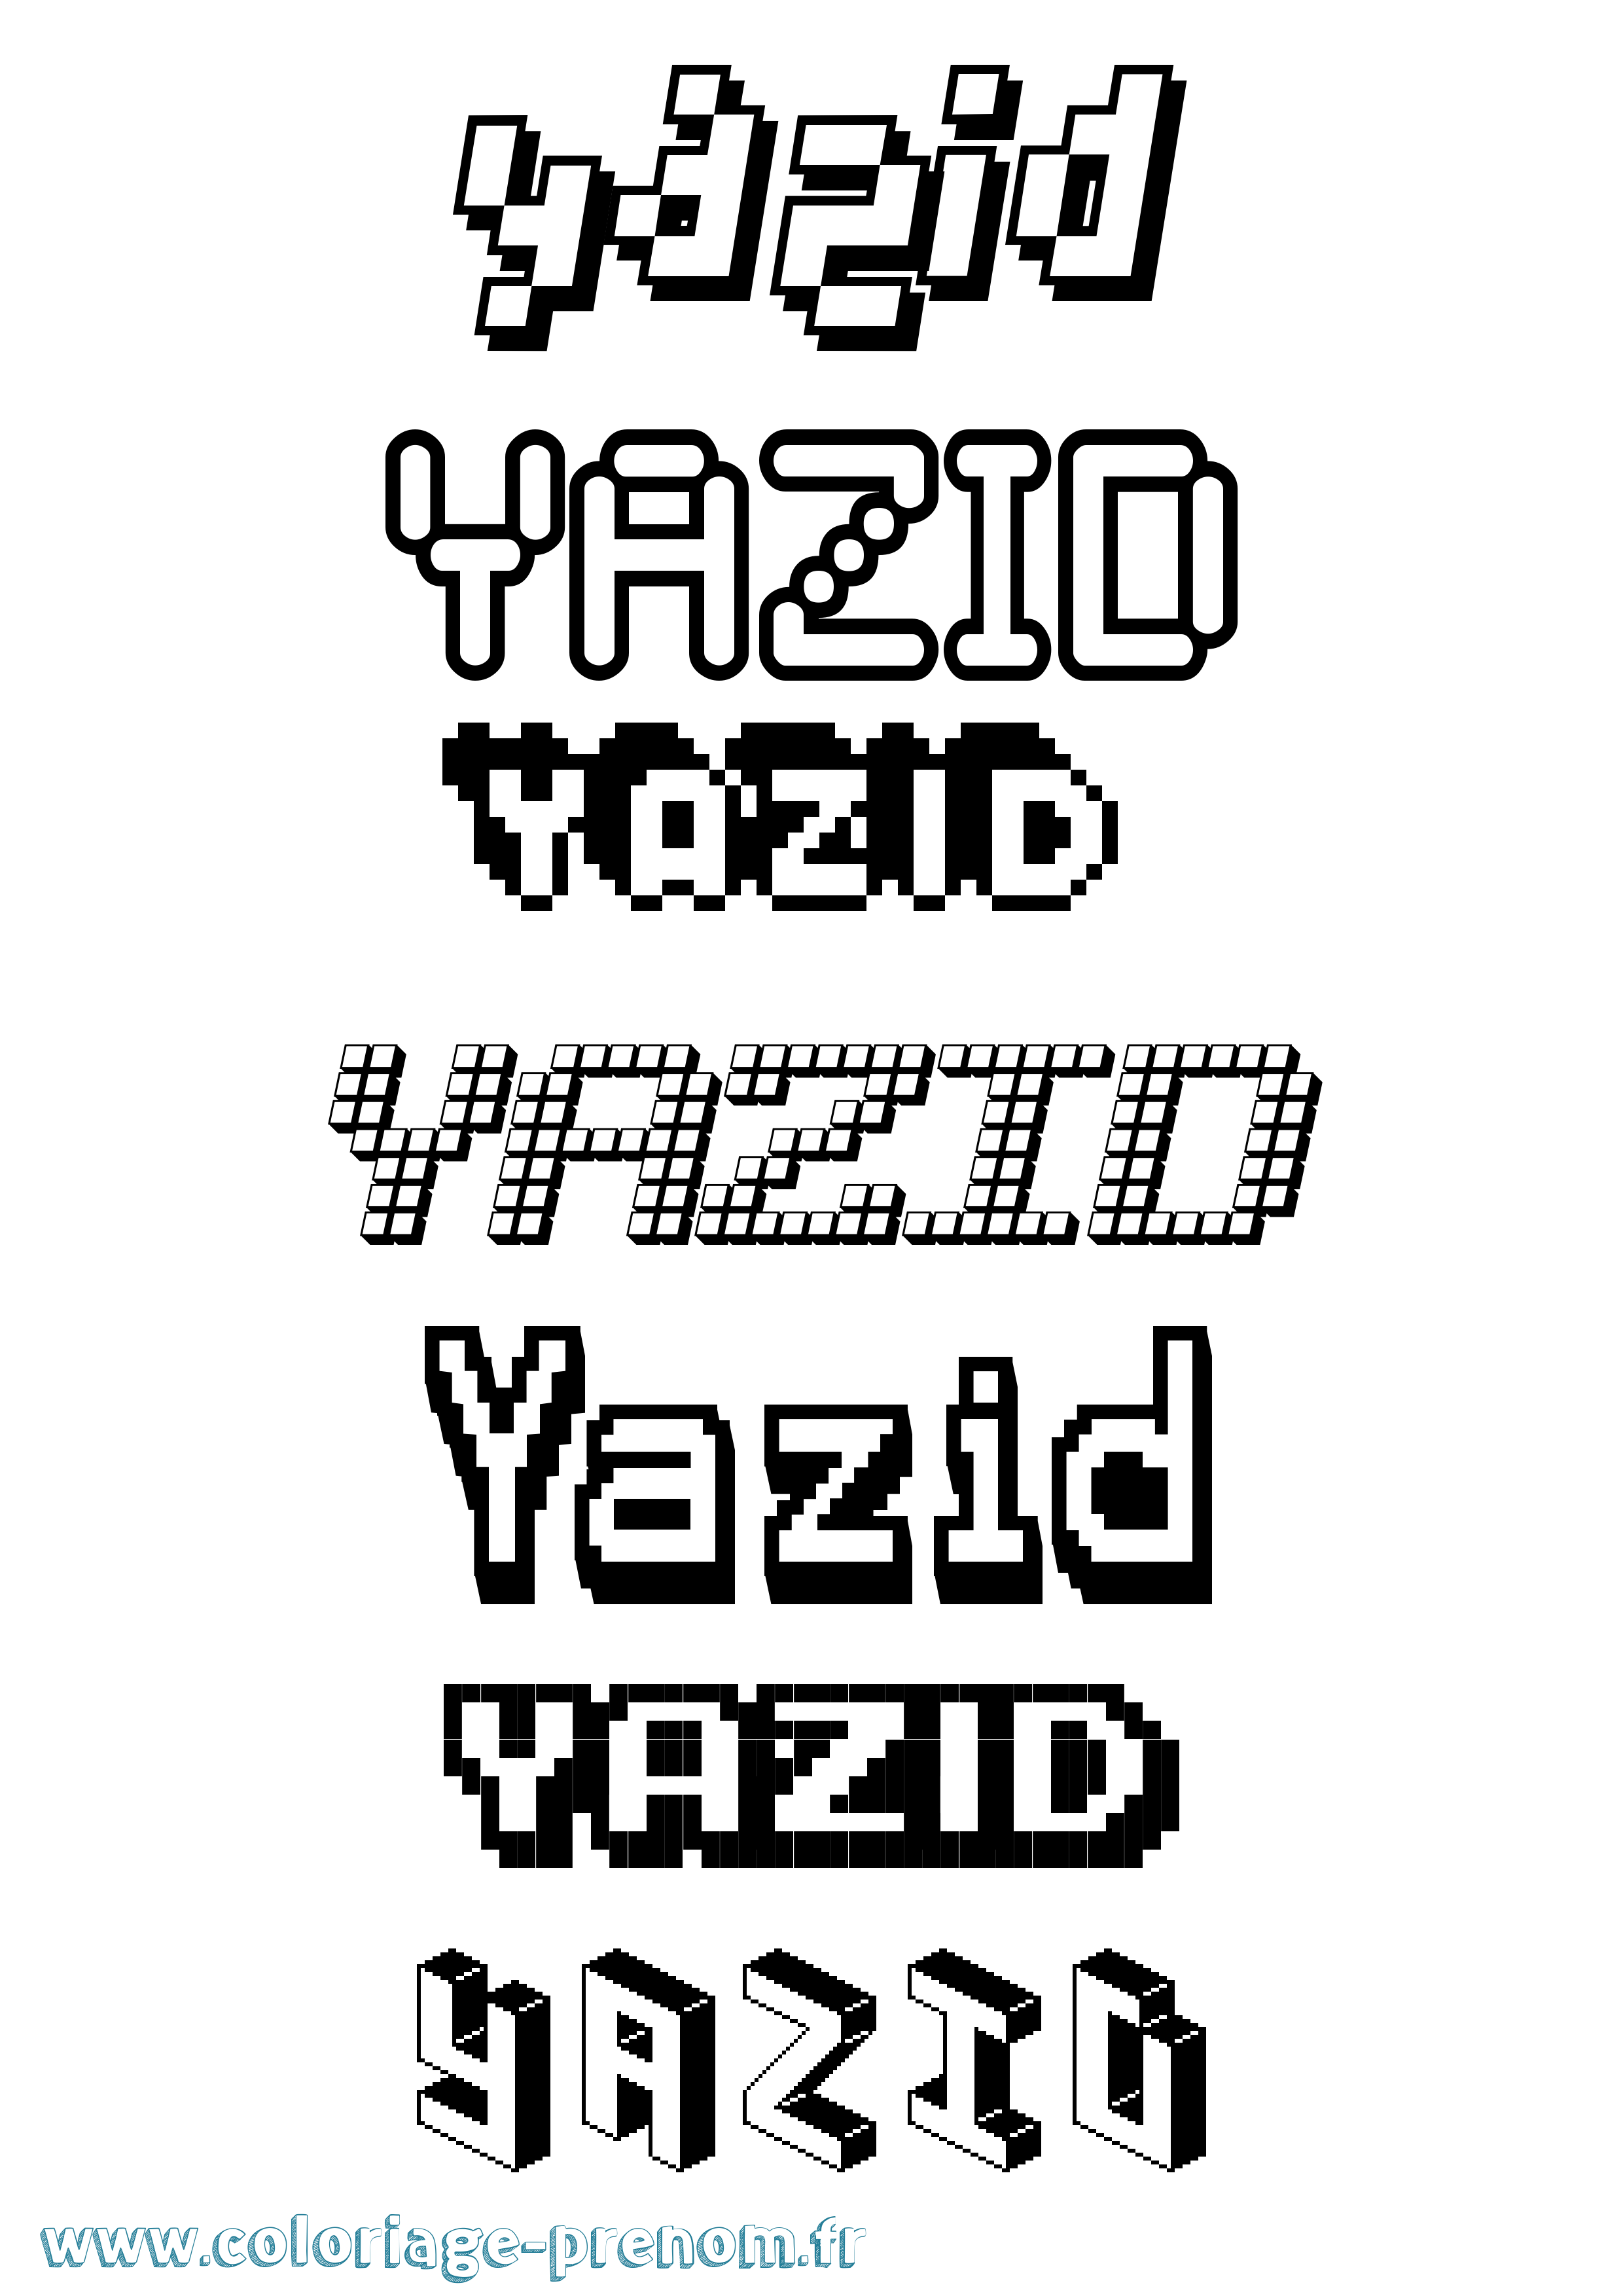 Coloriage prénom Yazid Pixel